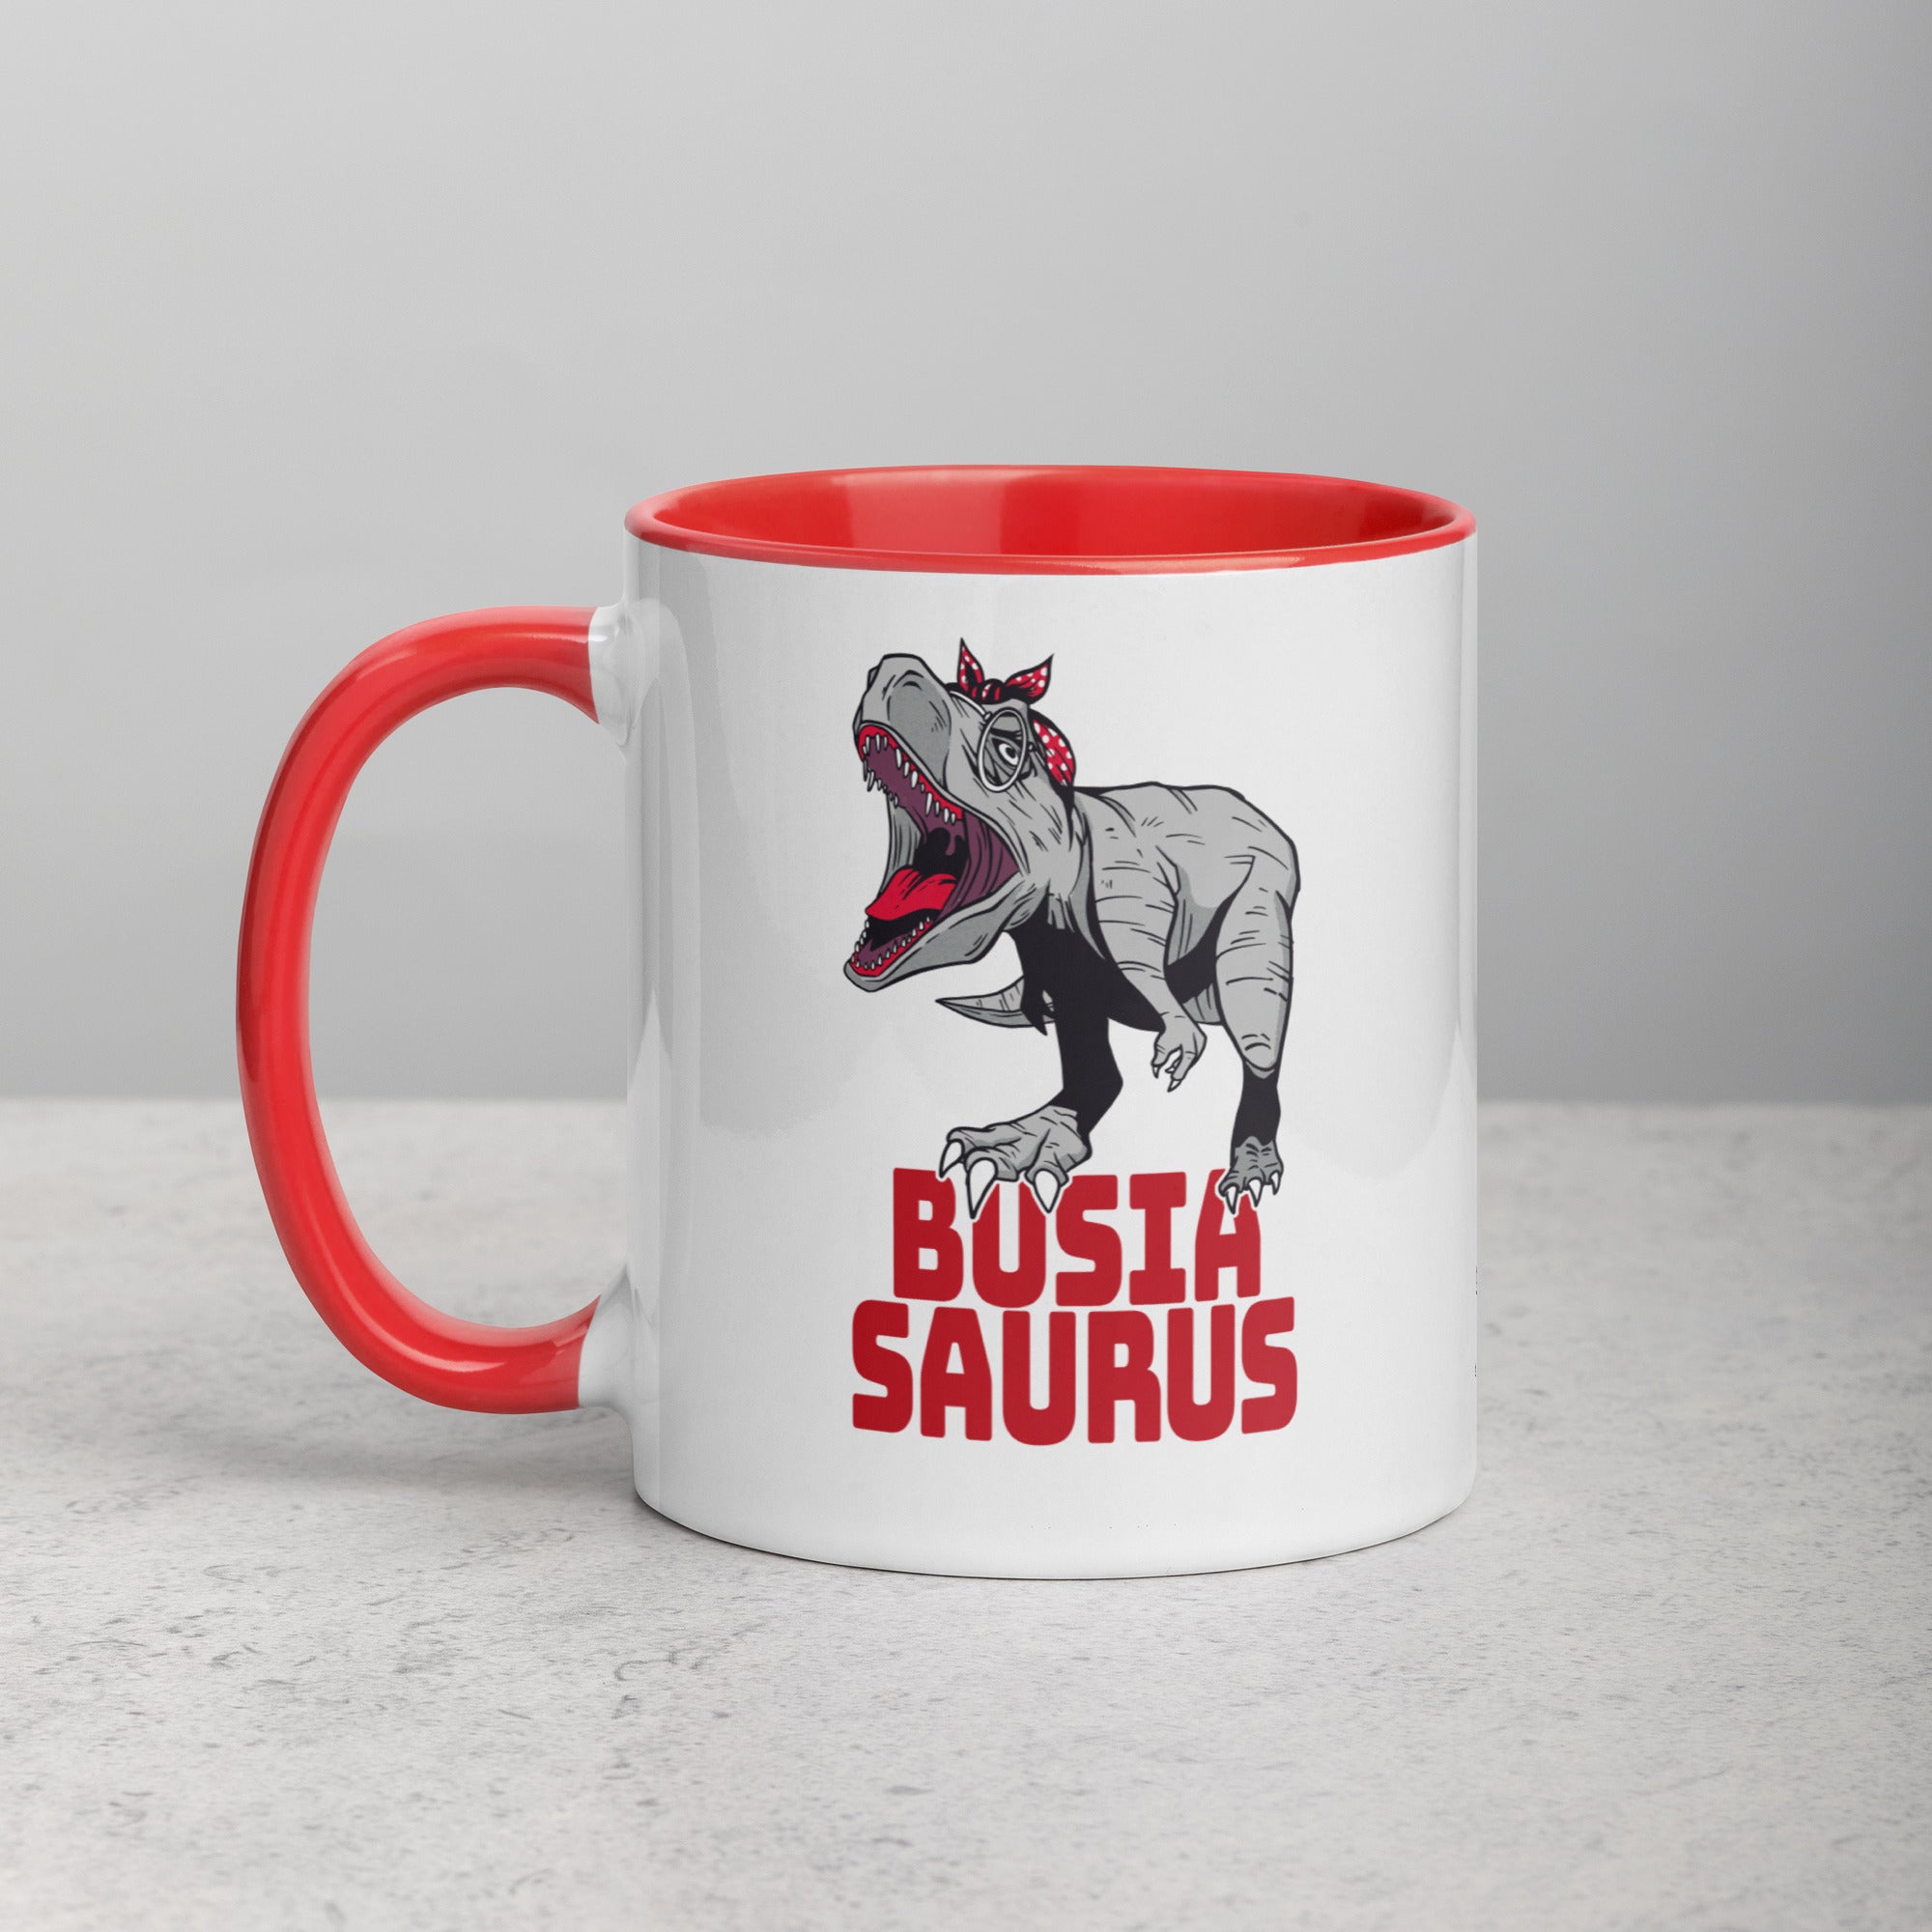 Busiasaurus Coffee Mug with Color Inside  Polish Shirt Store Red 11 oz 